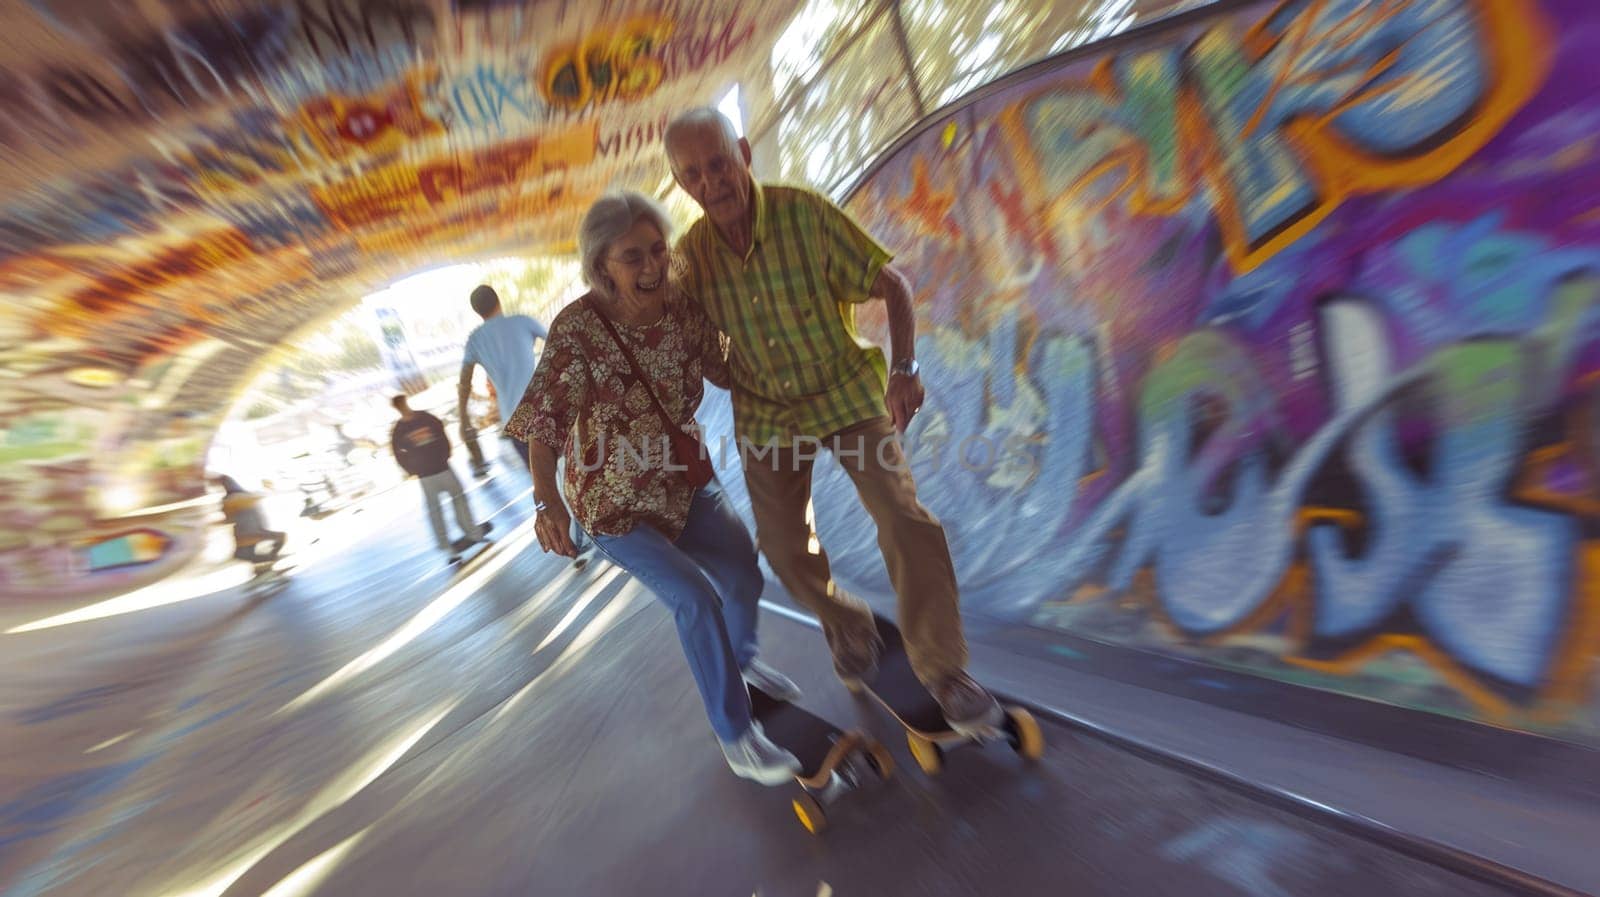 senior couple play in skateboard park pragma by biancoblue